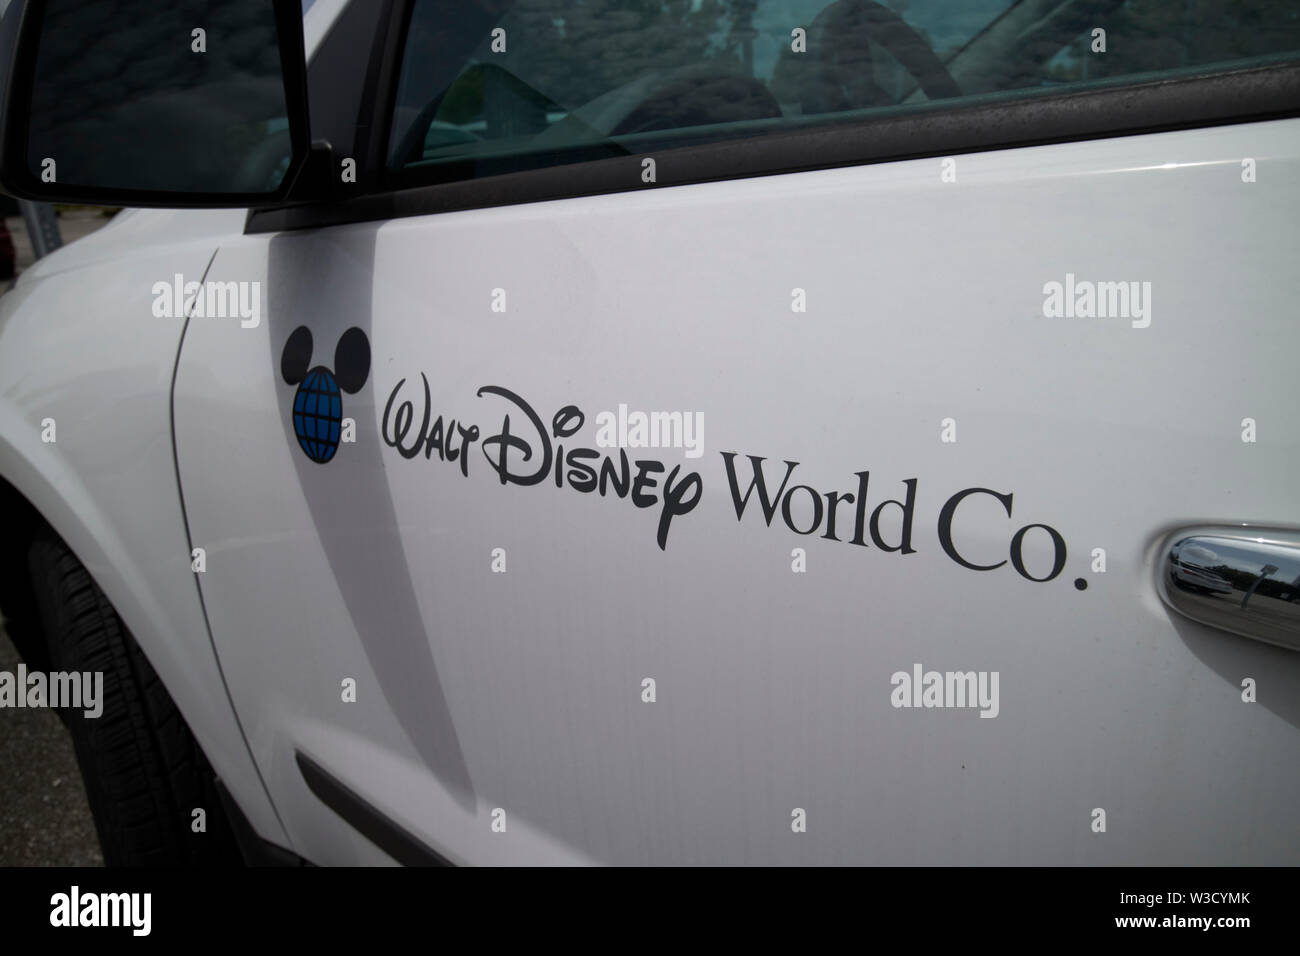 La Walt Disney world company nom et logo sur un véhicule Floride États-Unis d'Amérique Banque D'Images